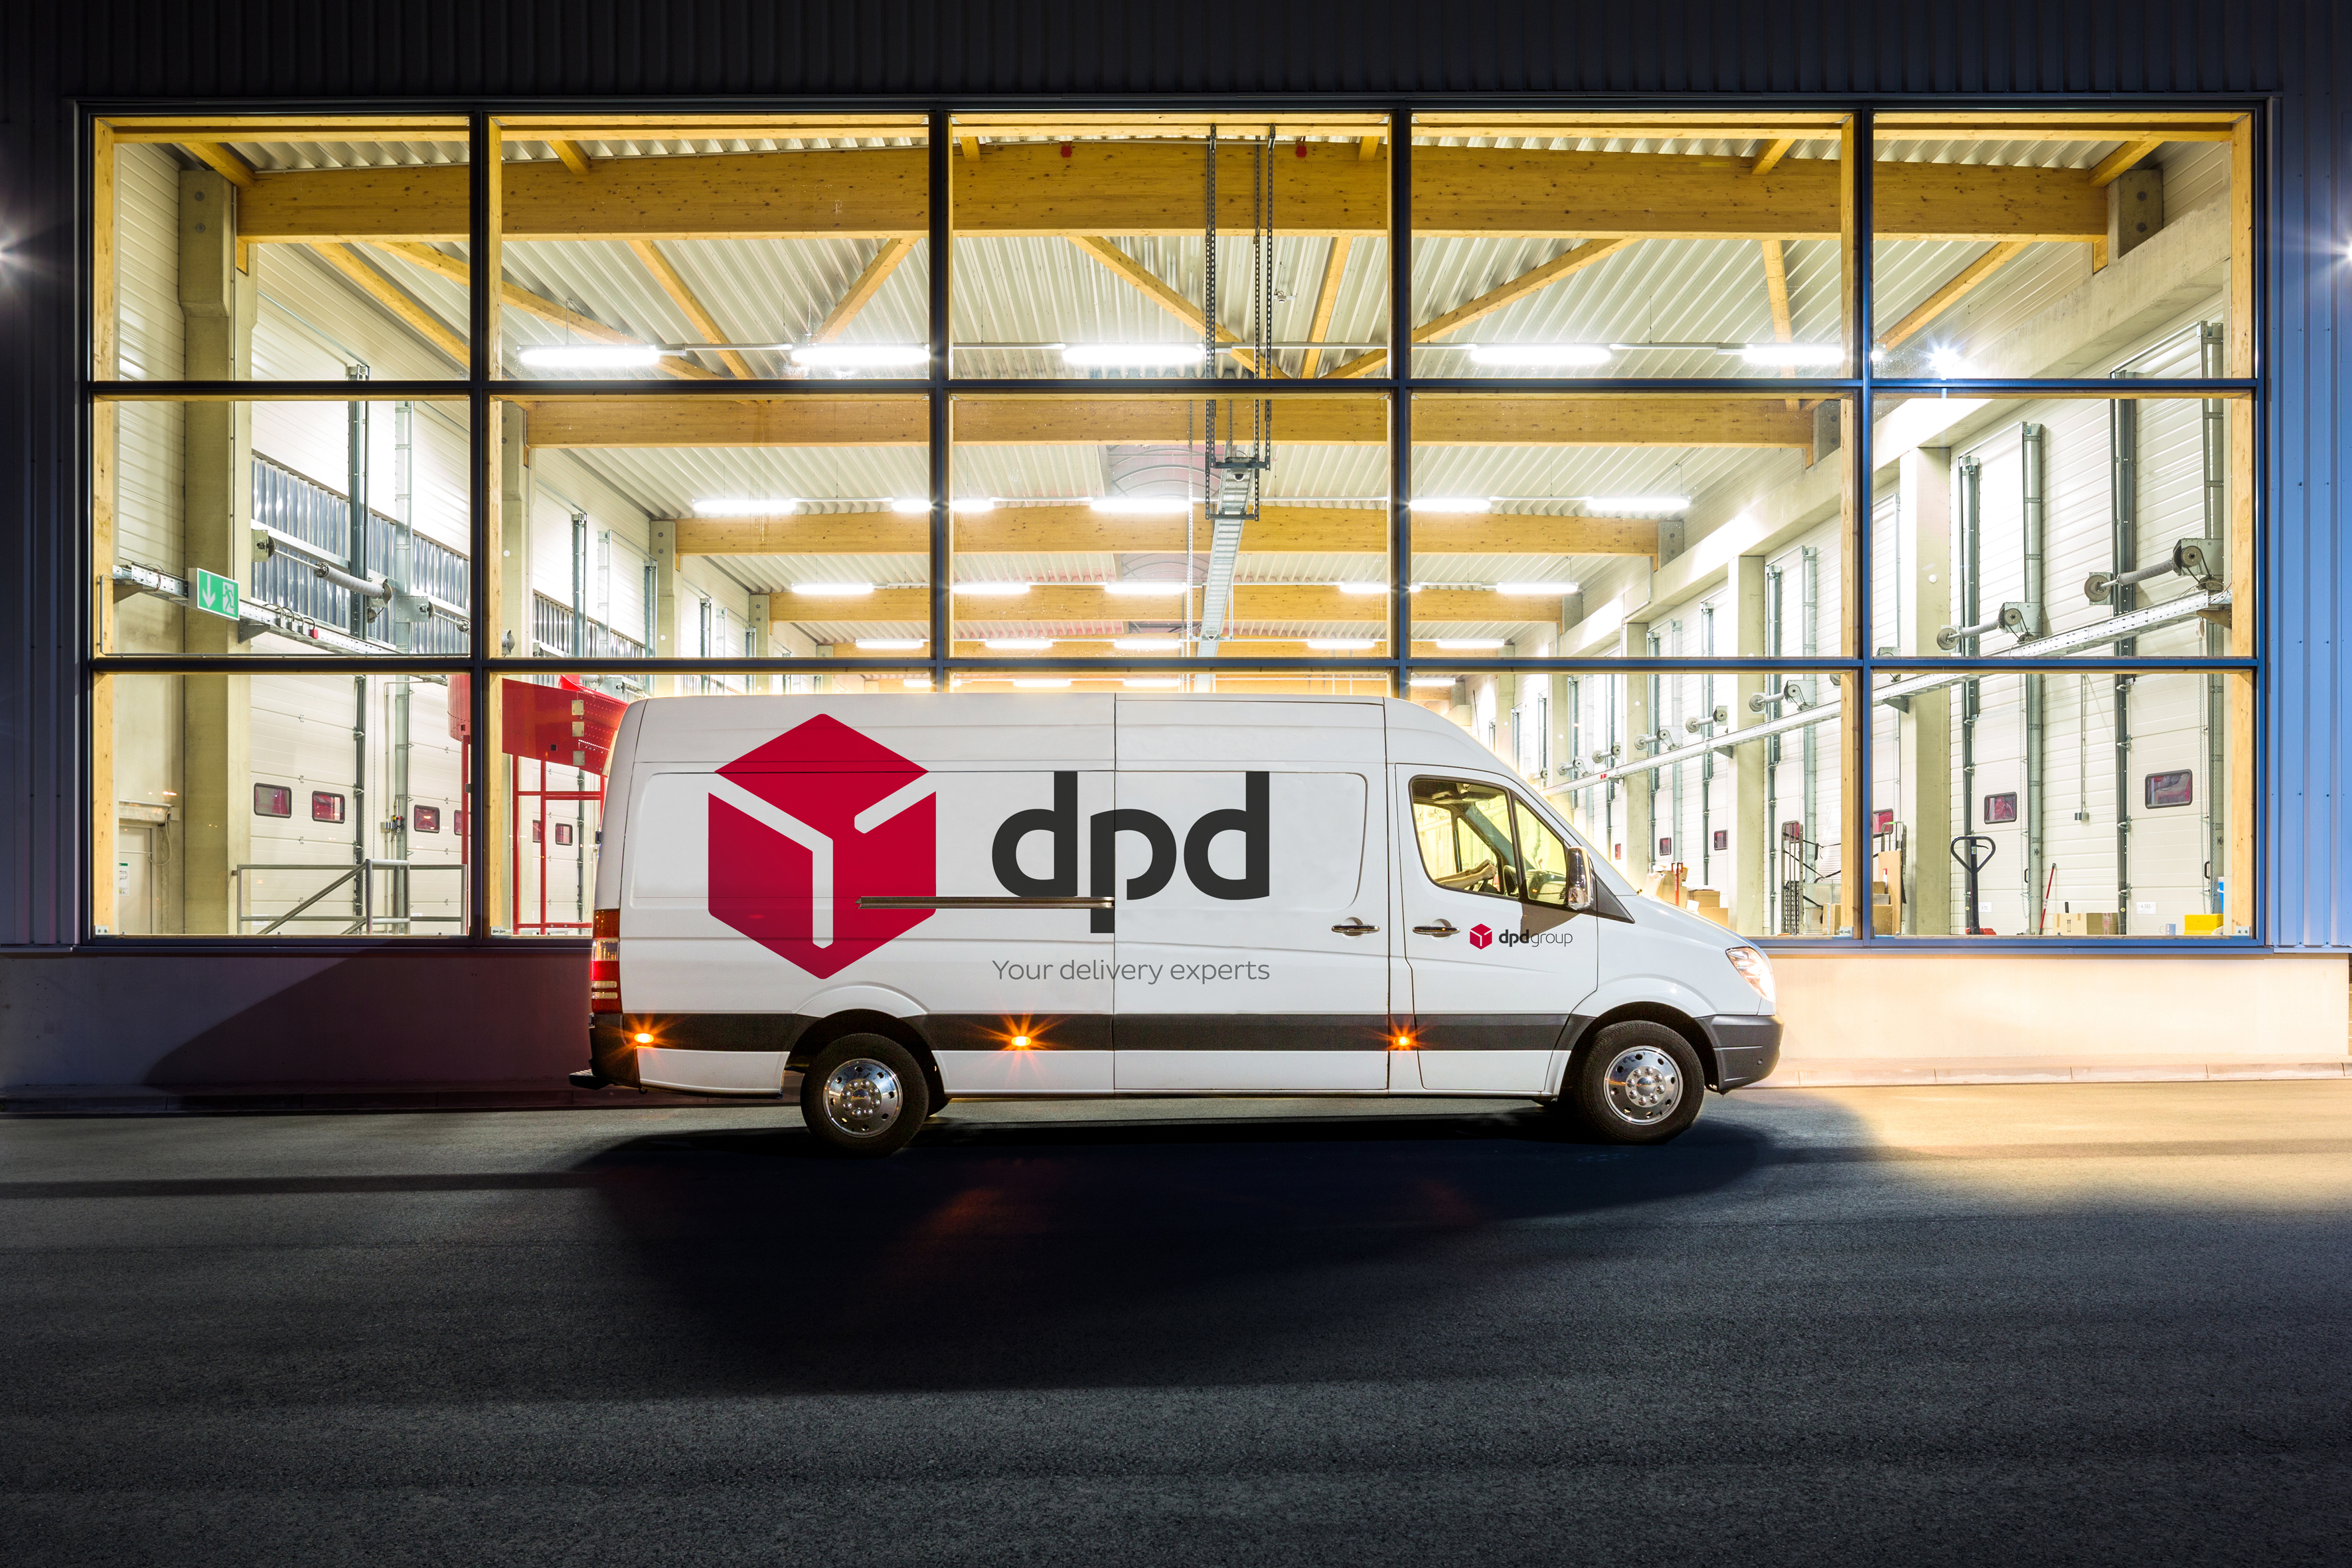 DPD Depot